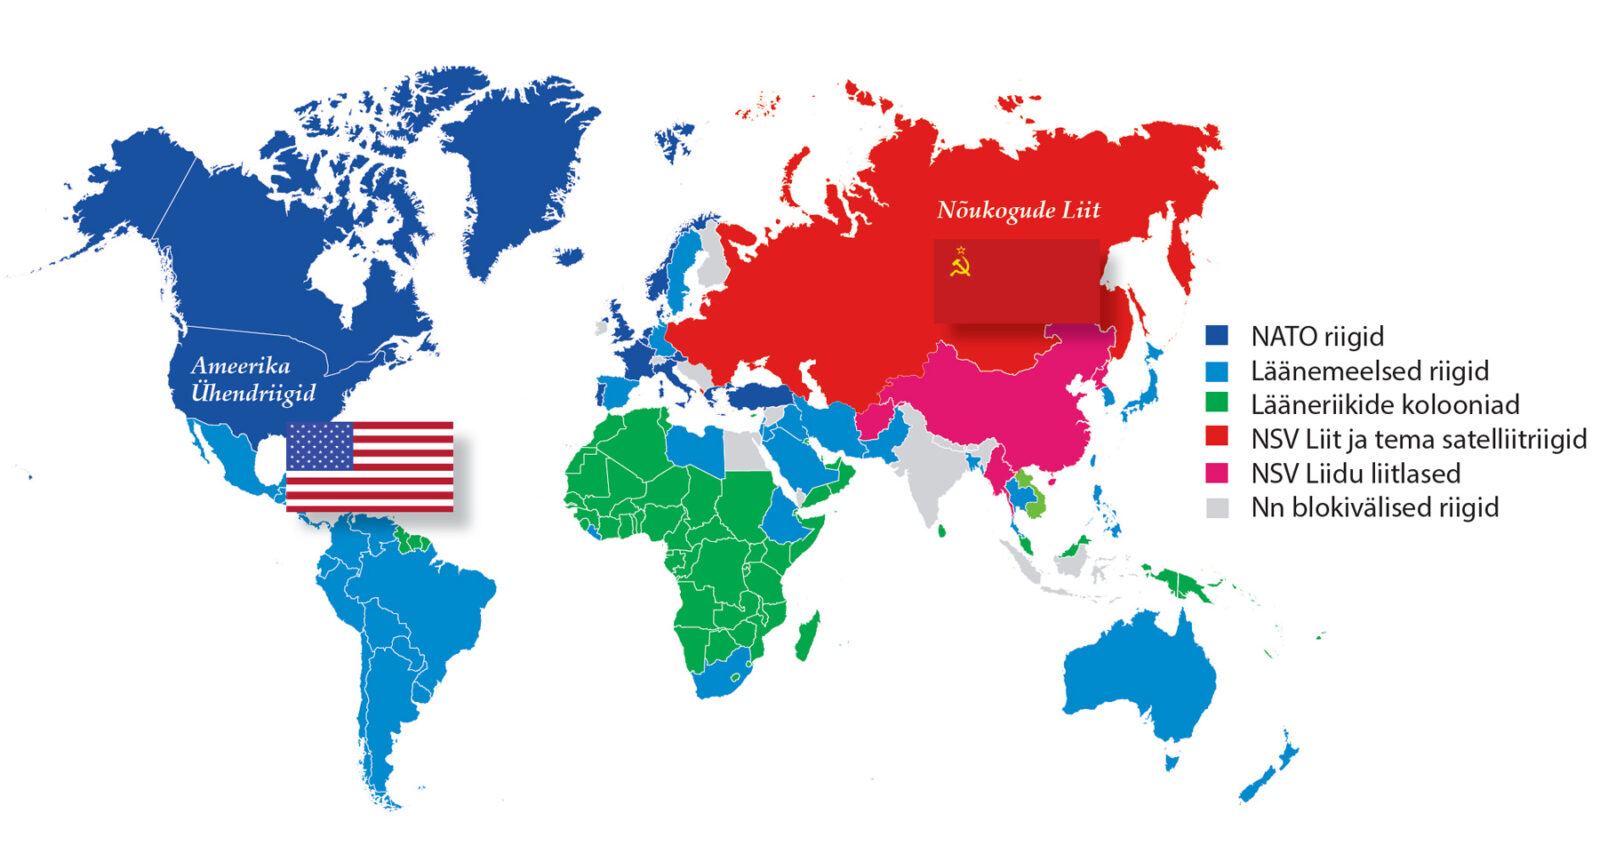 Maailma kaart, kus näidatud NATO riigid, läänemeelsed riigid, lääneriikide kolooniad, NSV Liit ja tema liitlased ning nn blokivälised riigid.